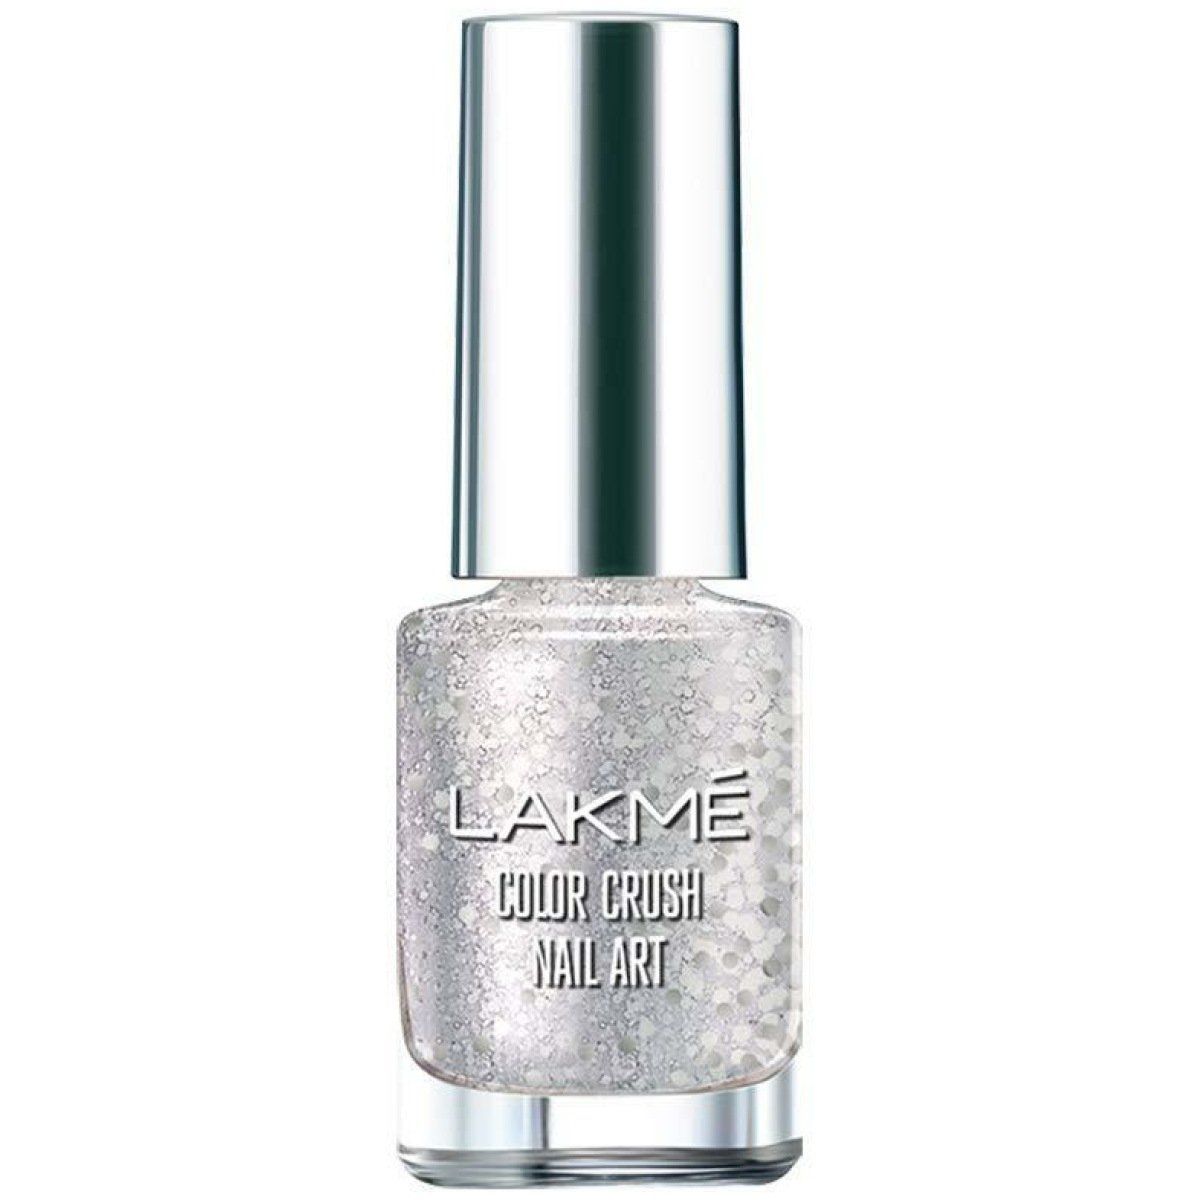 Lakme True Wear Color Crush Nail Polish - (6ml) | eBay